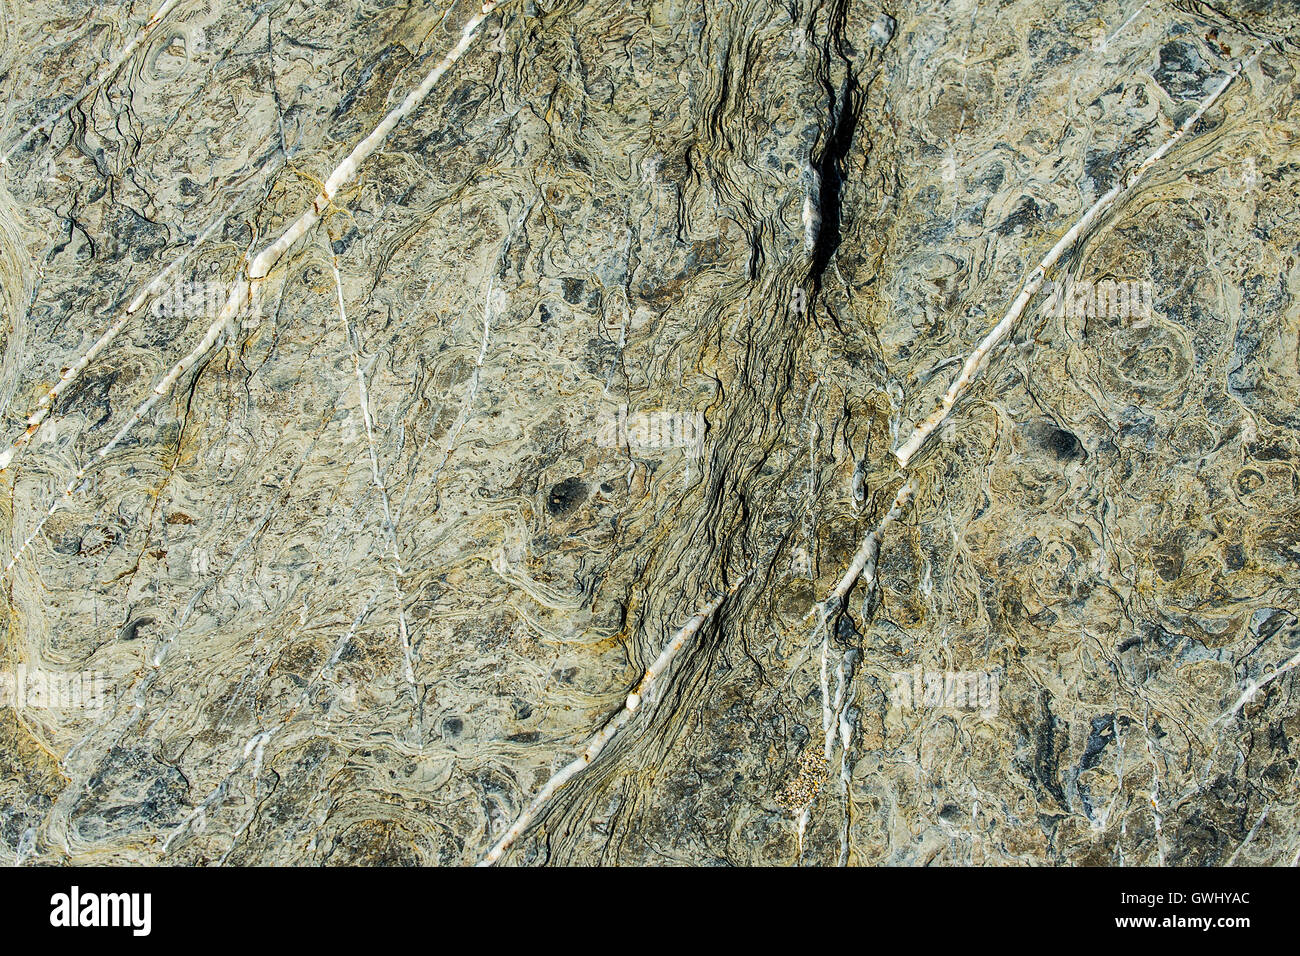 Detailansicht von Marken, Linien und Muster in der Erodierten Oberfläche rock. Stockfoto